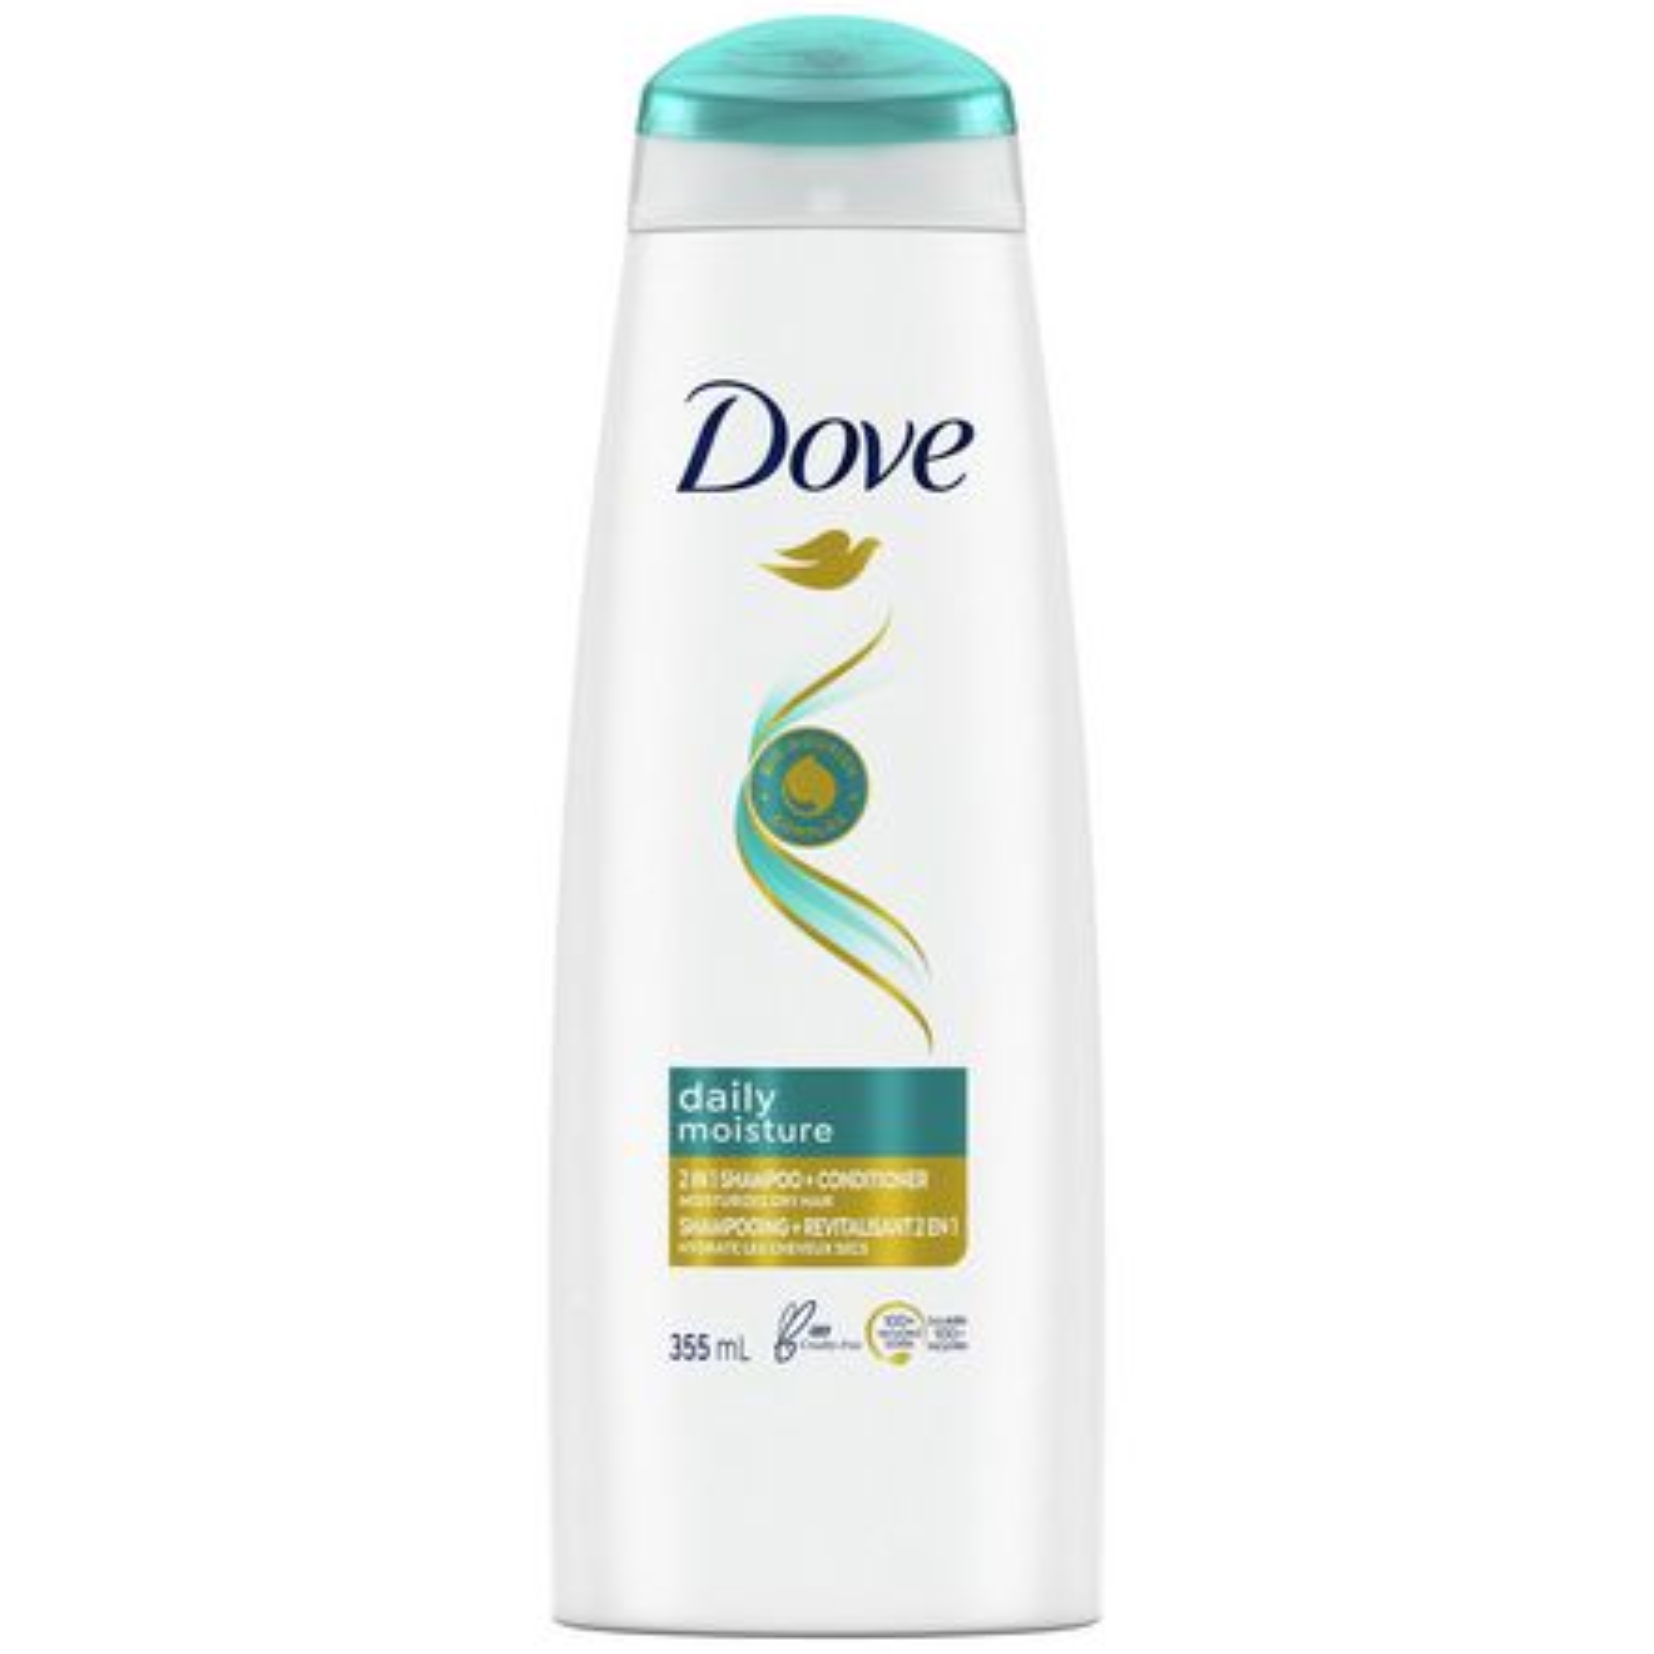 Dove 2 in 1 Daily Moisture Shampoo & Conditioner 355ml